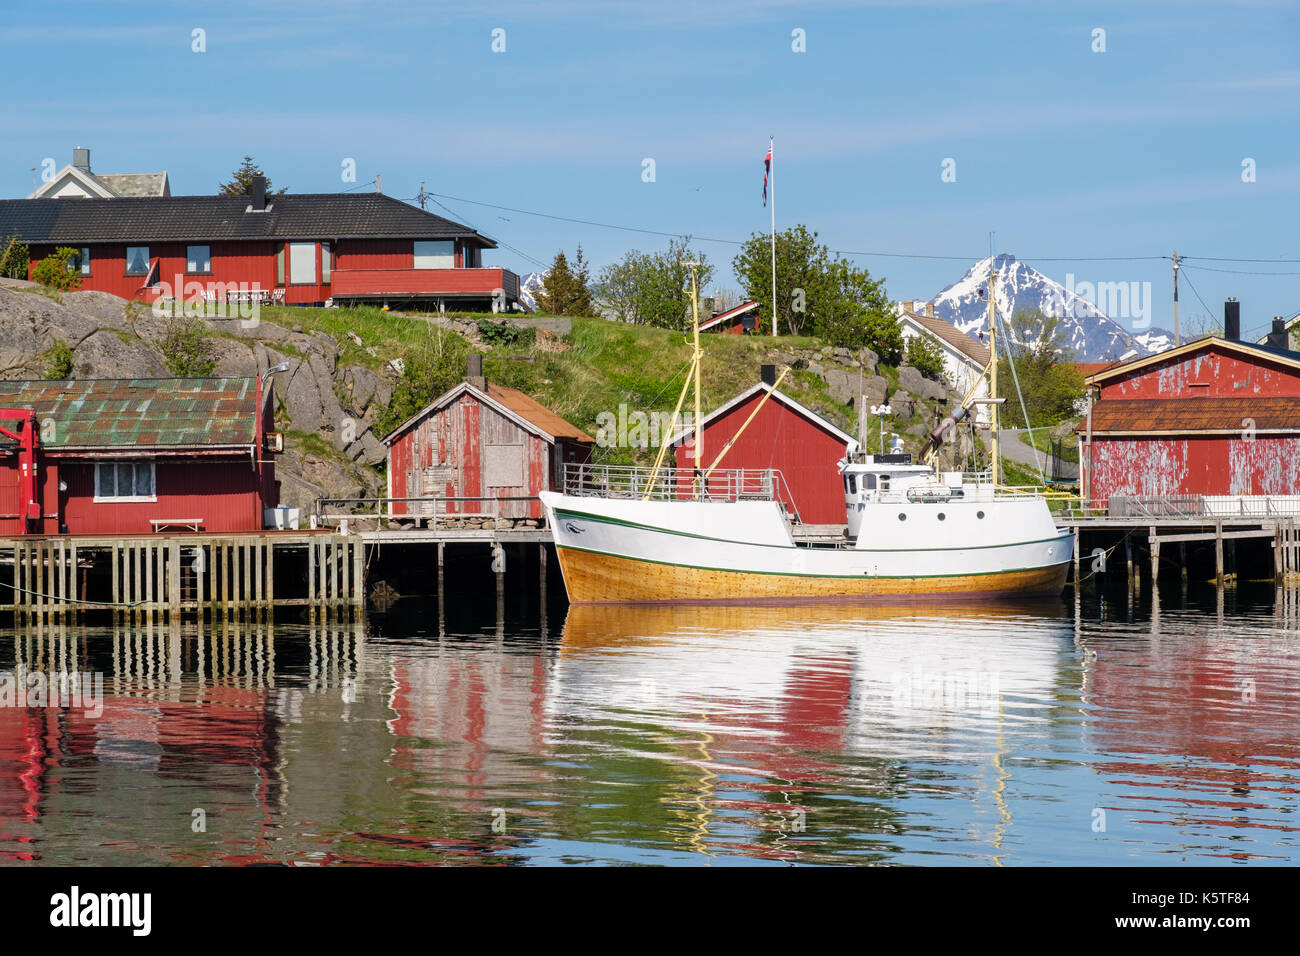 Fischerboot im Hafen mit Rorbu Hütten auf Stelzen in den Norwegischen Dorf vertäut. Ballstad, Vestvågøya, Lofoten, Nordland, Norwegen Stockfoto